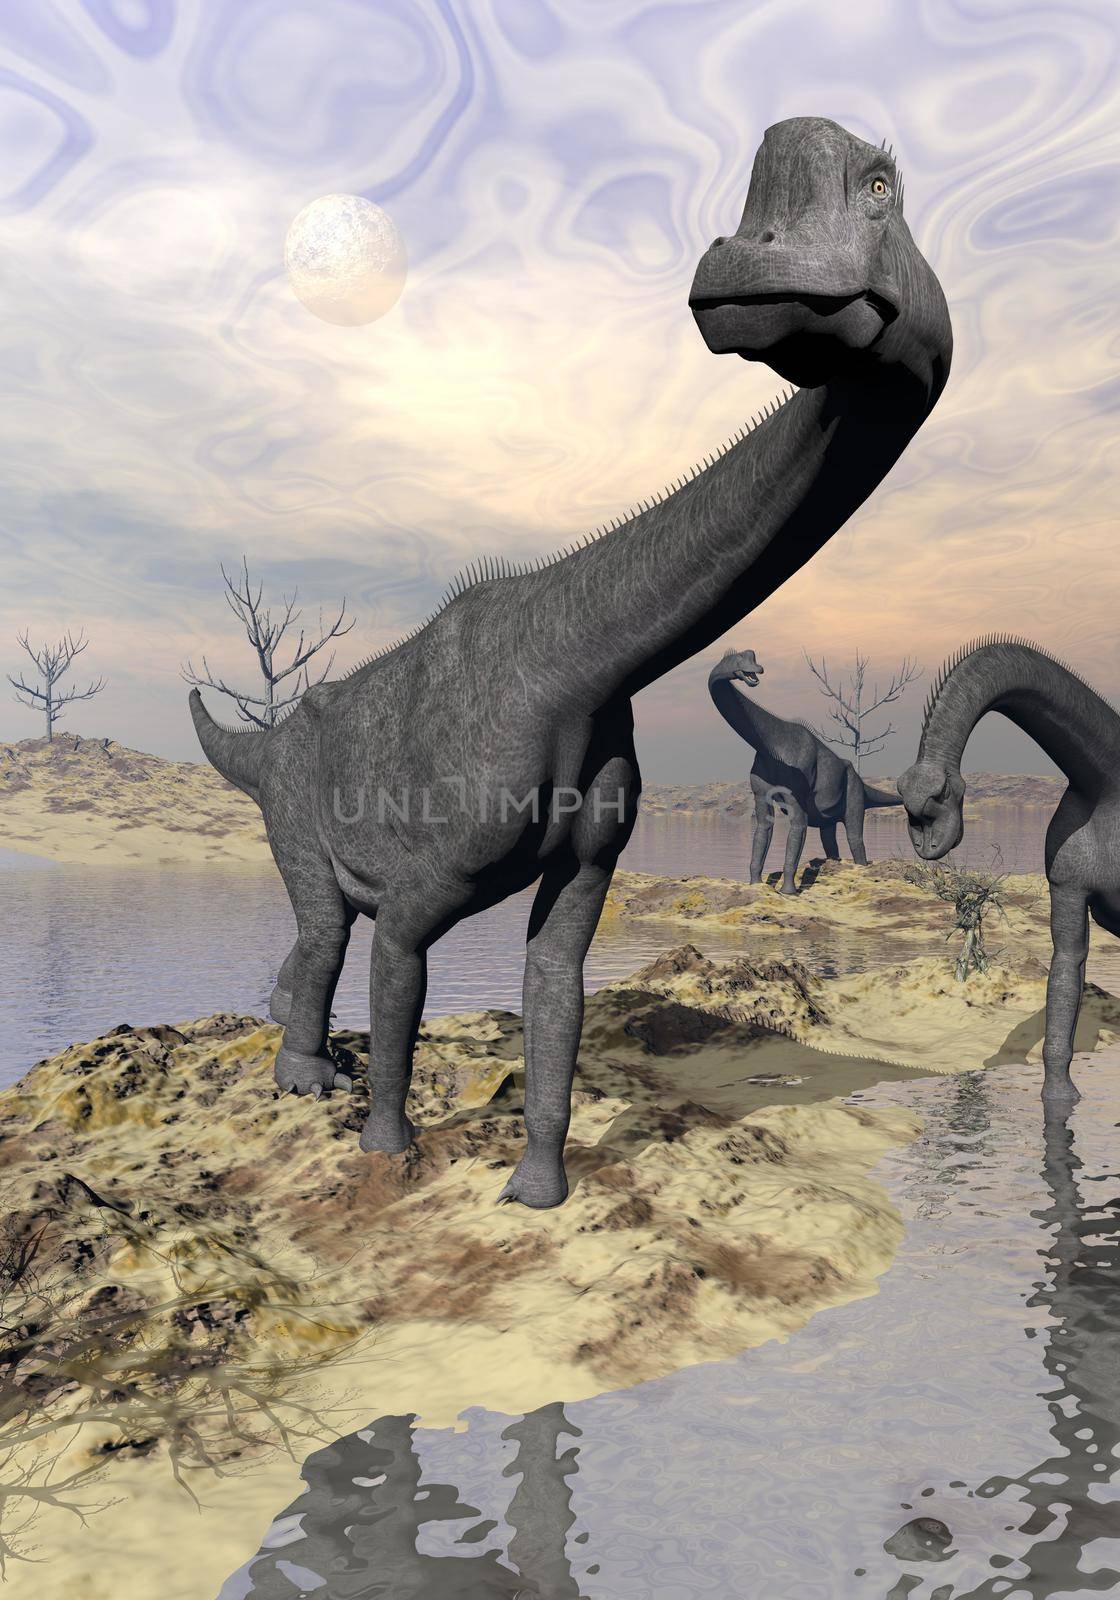 Brachiosaurus dinosaurs near water - 3D render by Elenaphotos21